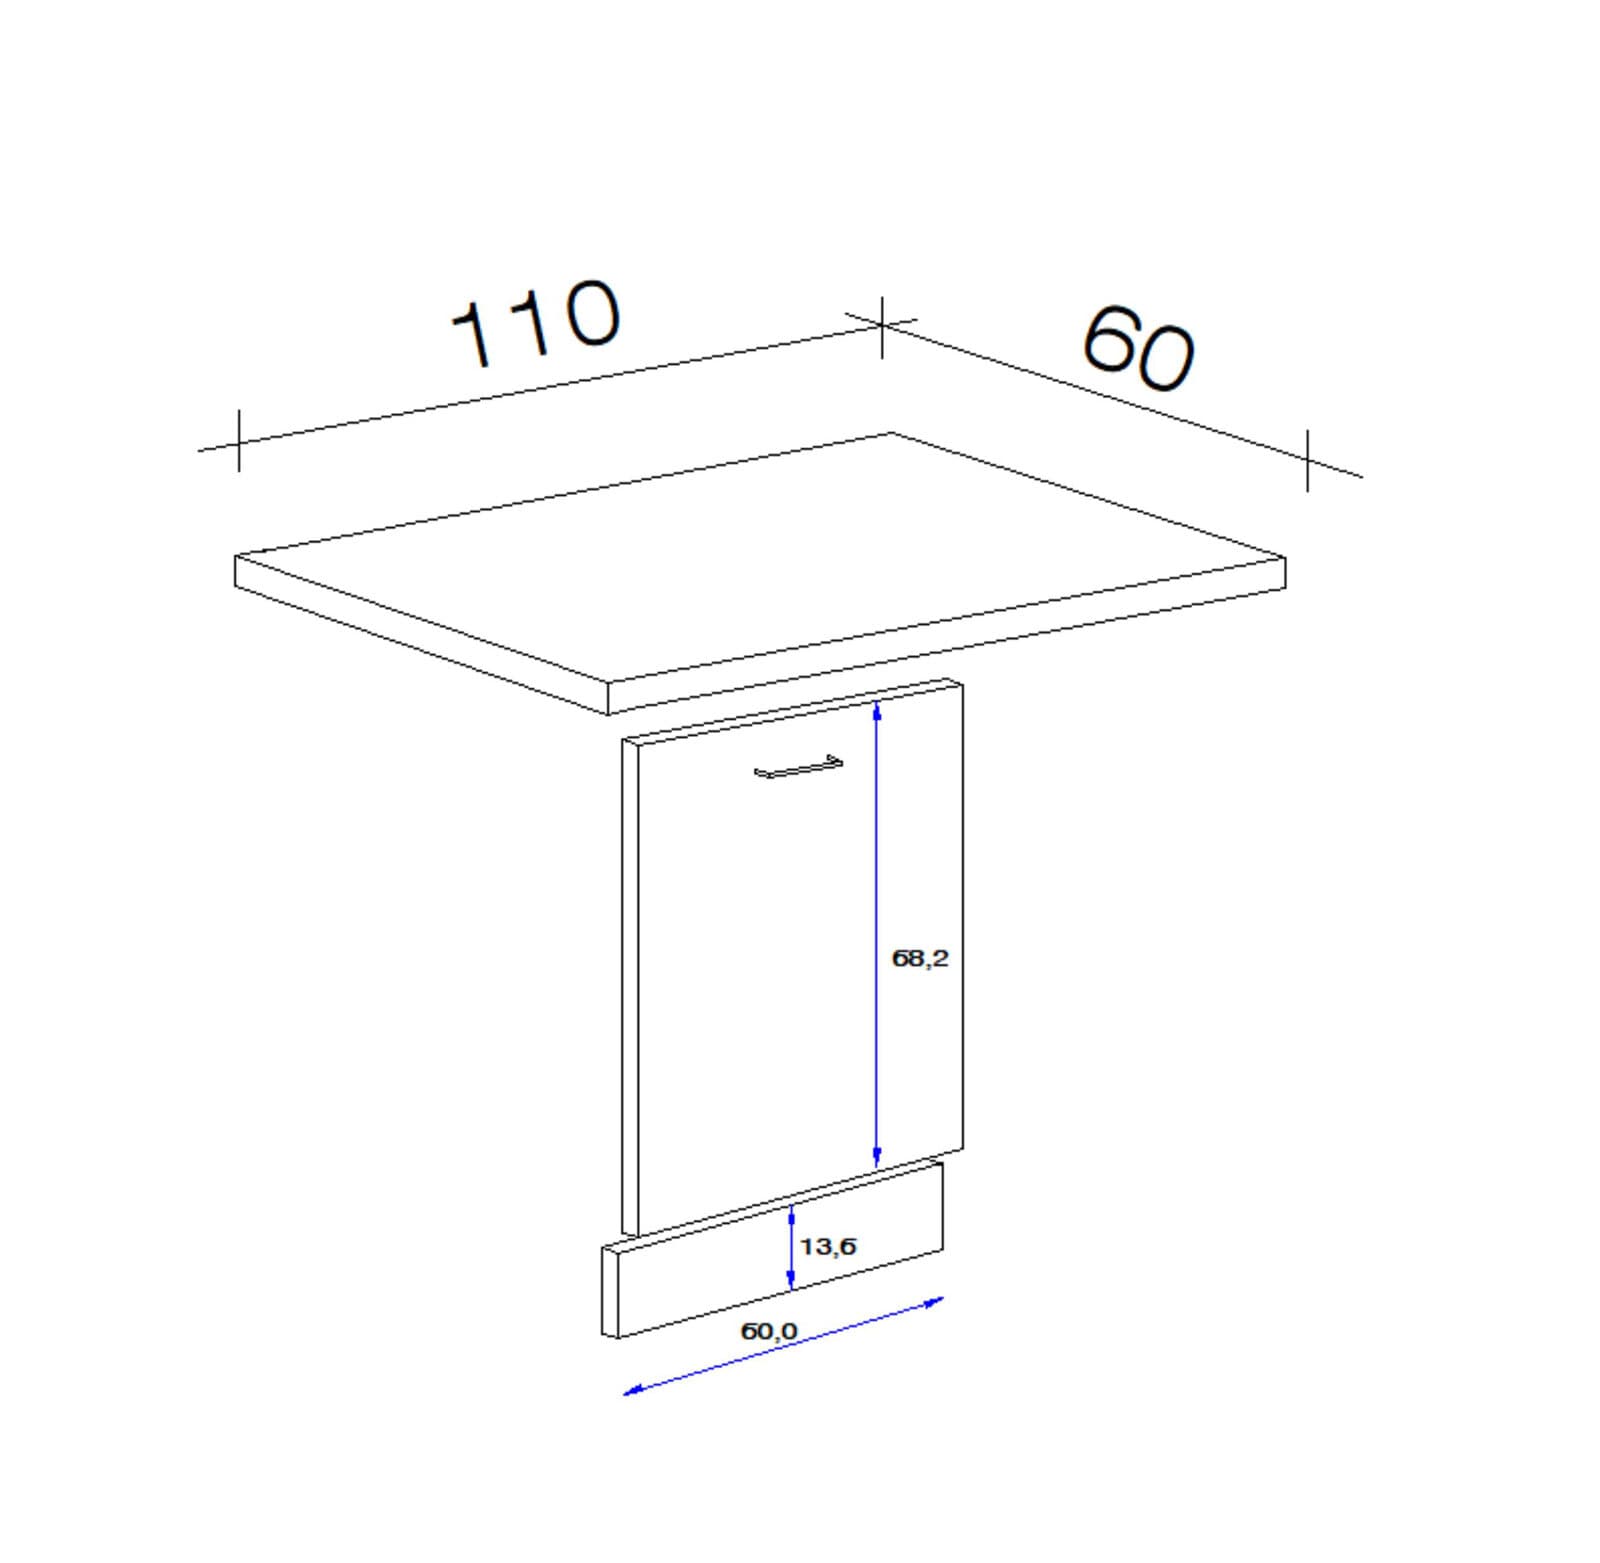 Küchenmöbel Geschirrspüler-Paket NEO ca. 110/86/60 cm weiß